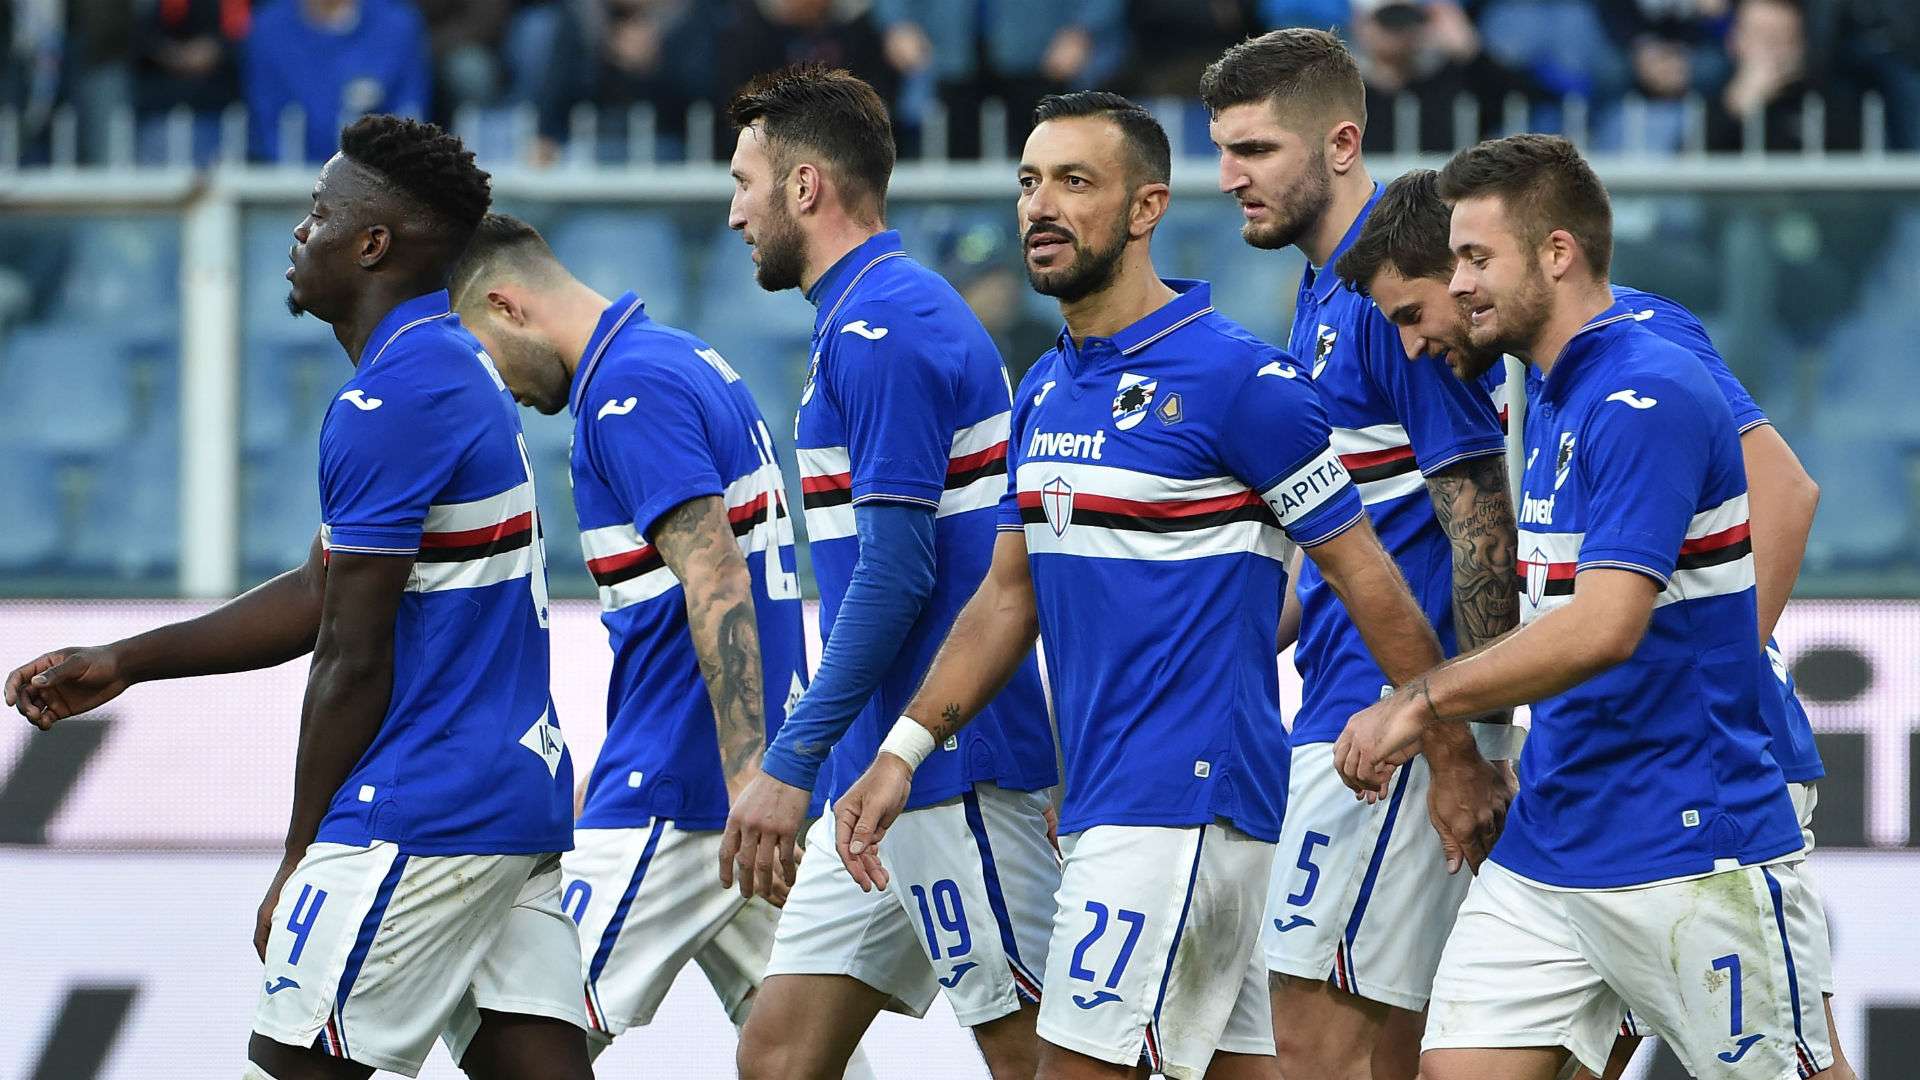 Sampdoria Quagliarella, Linetty, Vieira, Vasco Regini